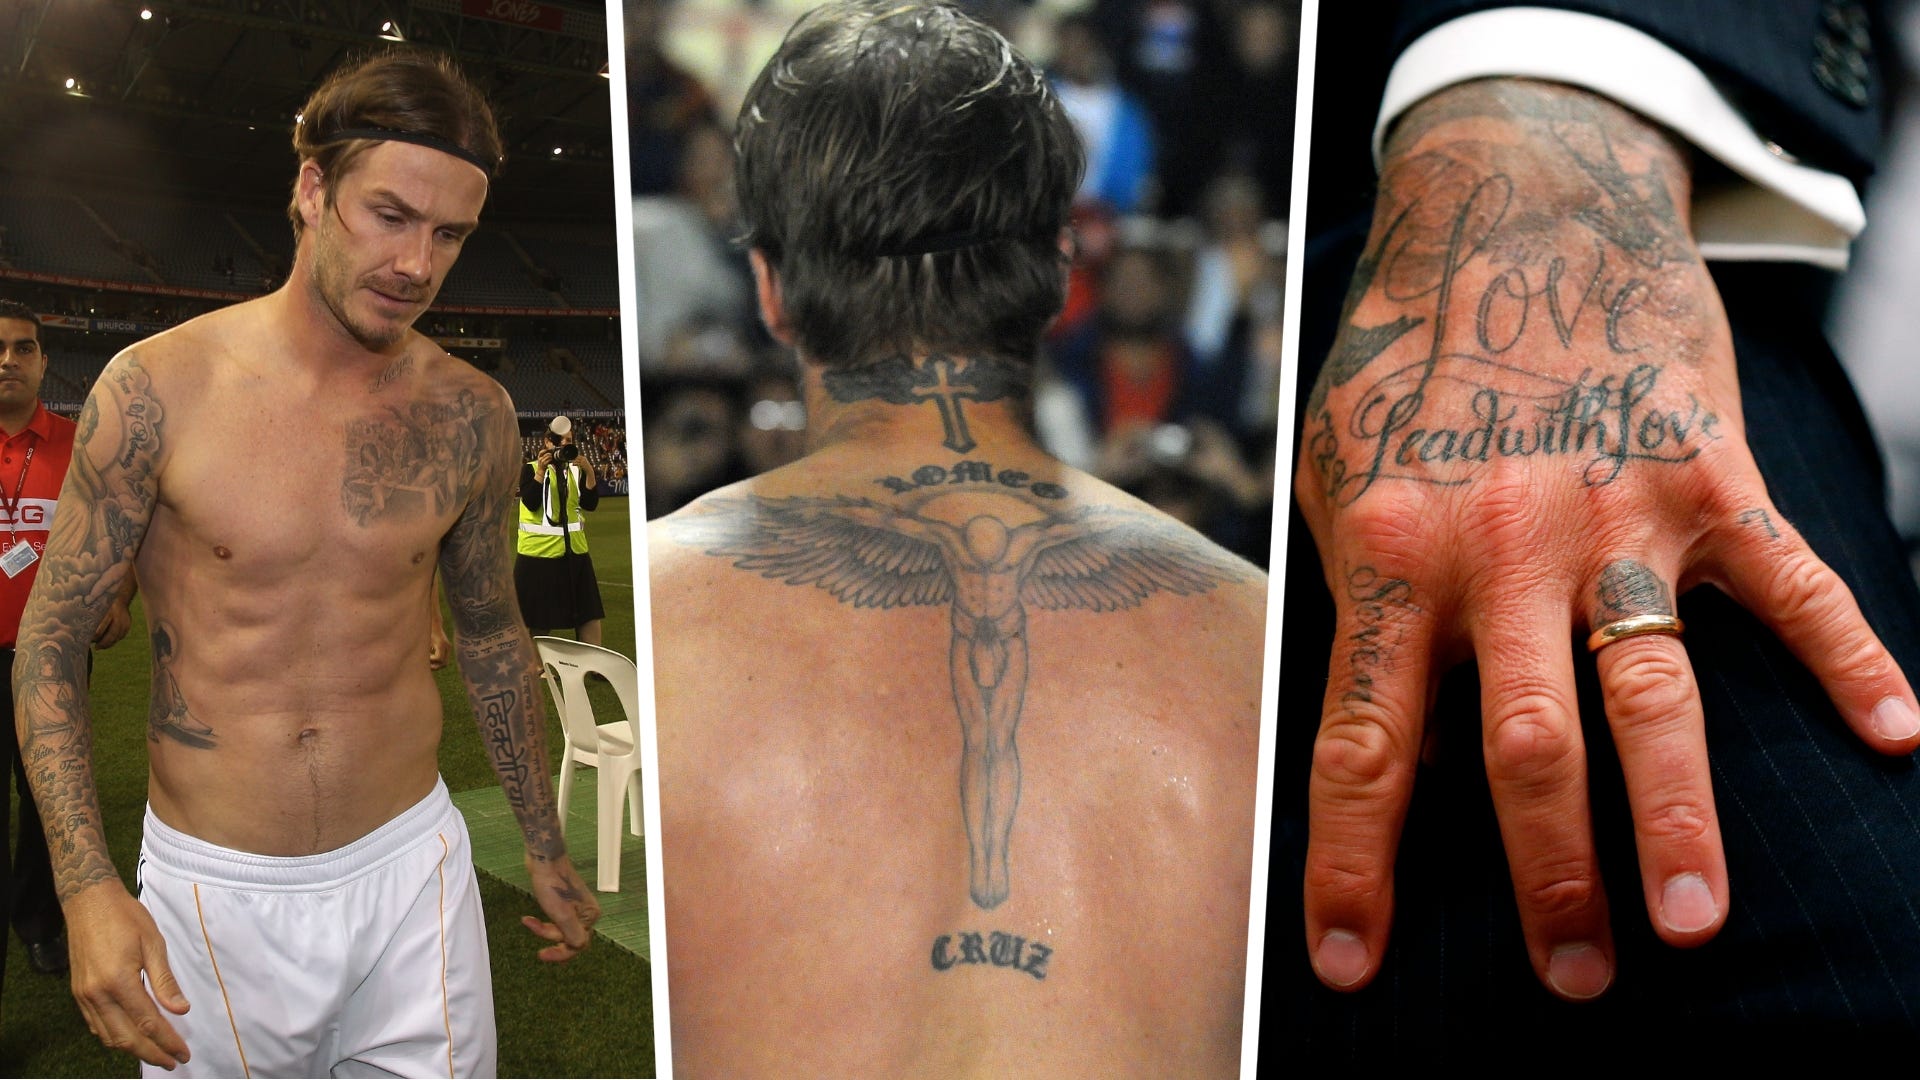 Vóc dáng cơ bắp của Sergio Ramos gây kinh ngạc trên mạng xã hội